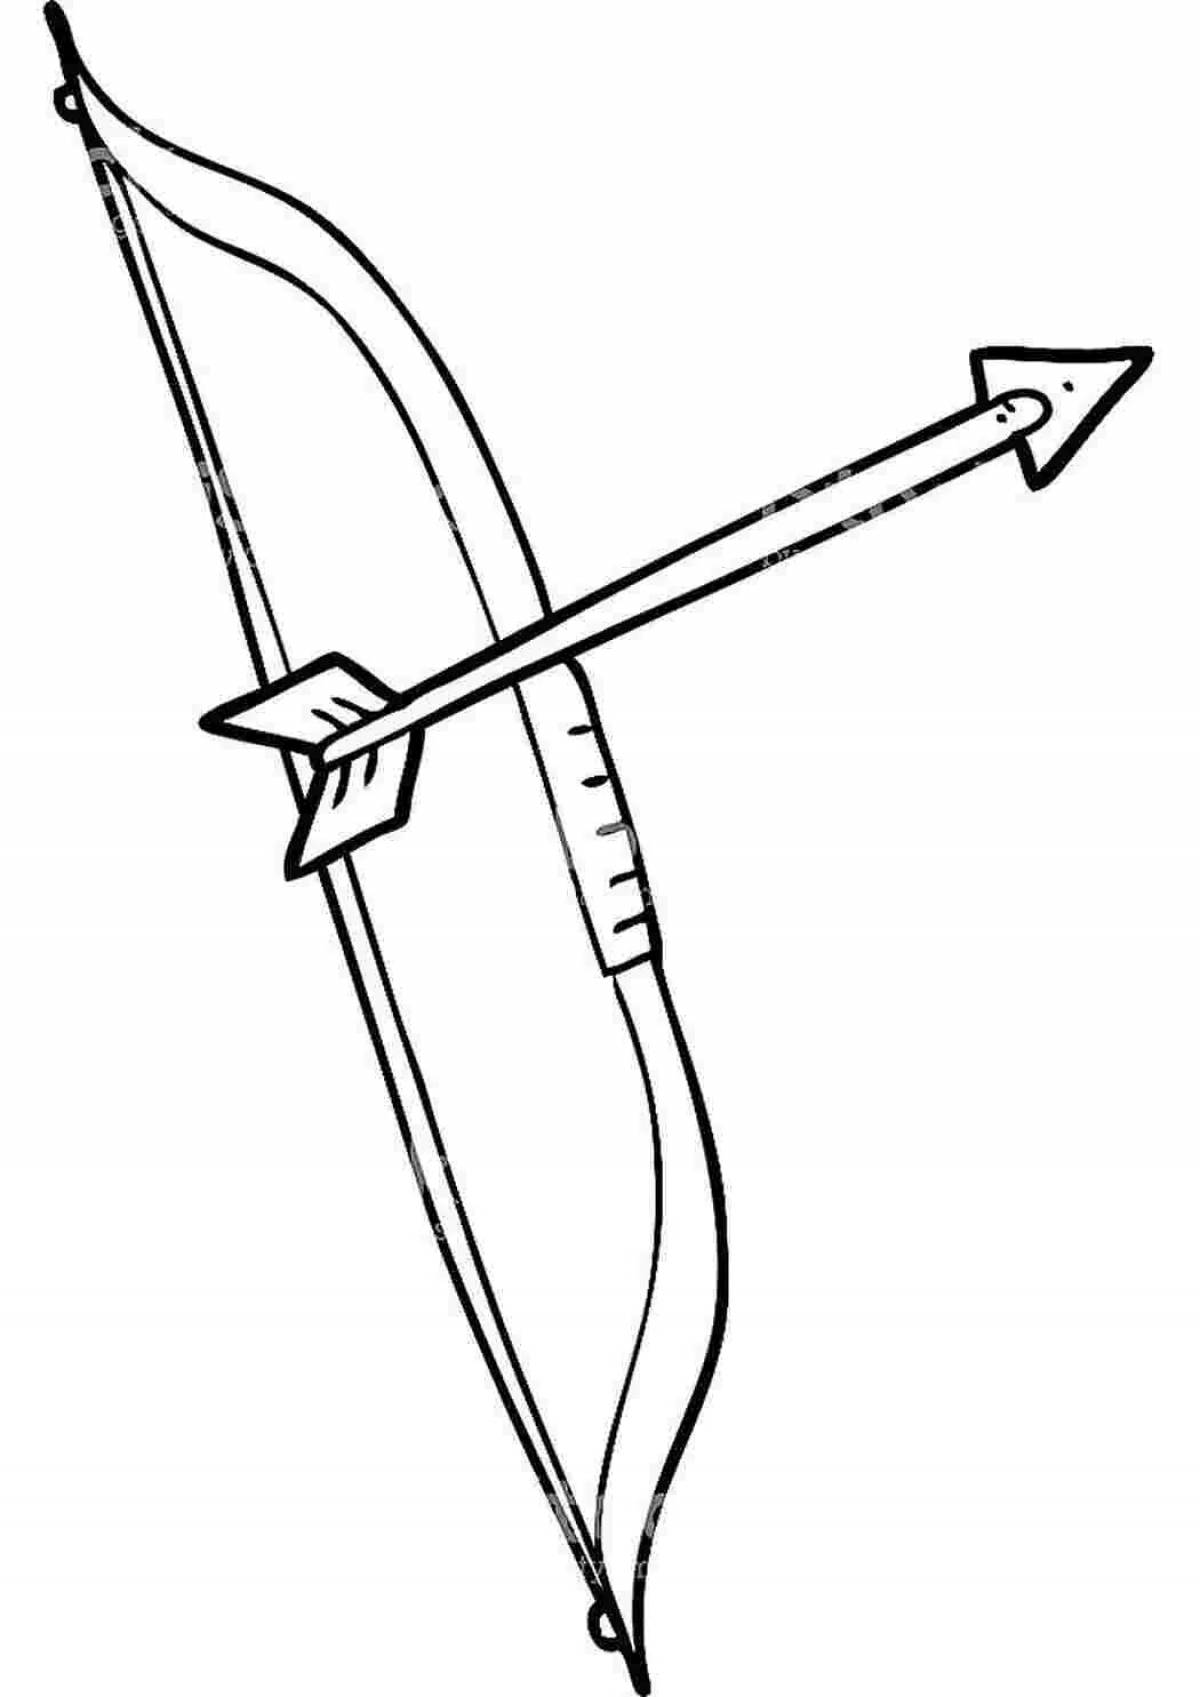 Bow and arrow #3